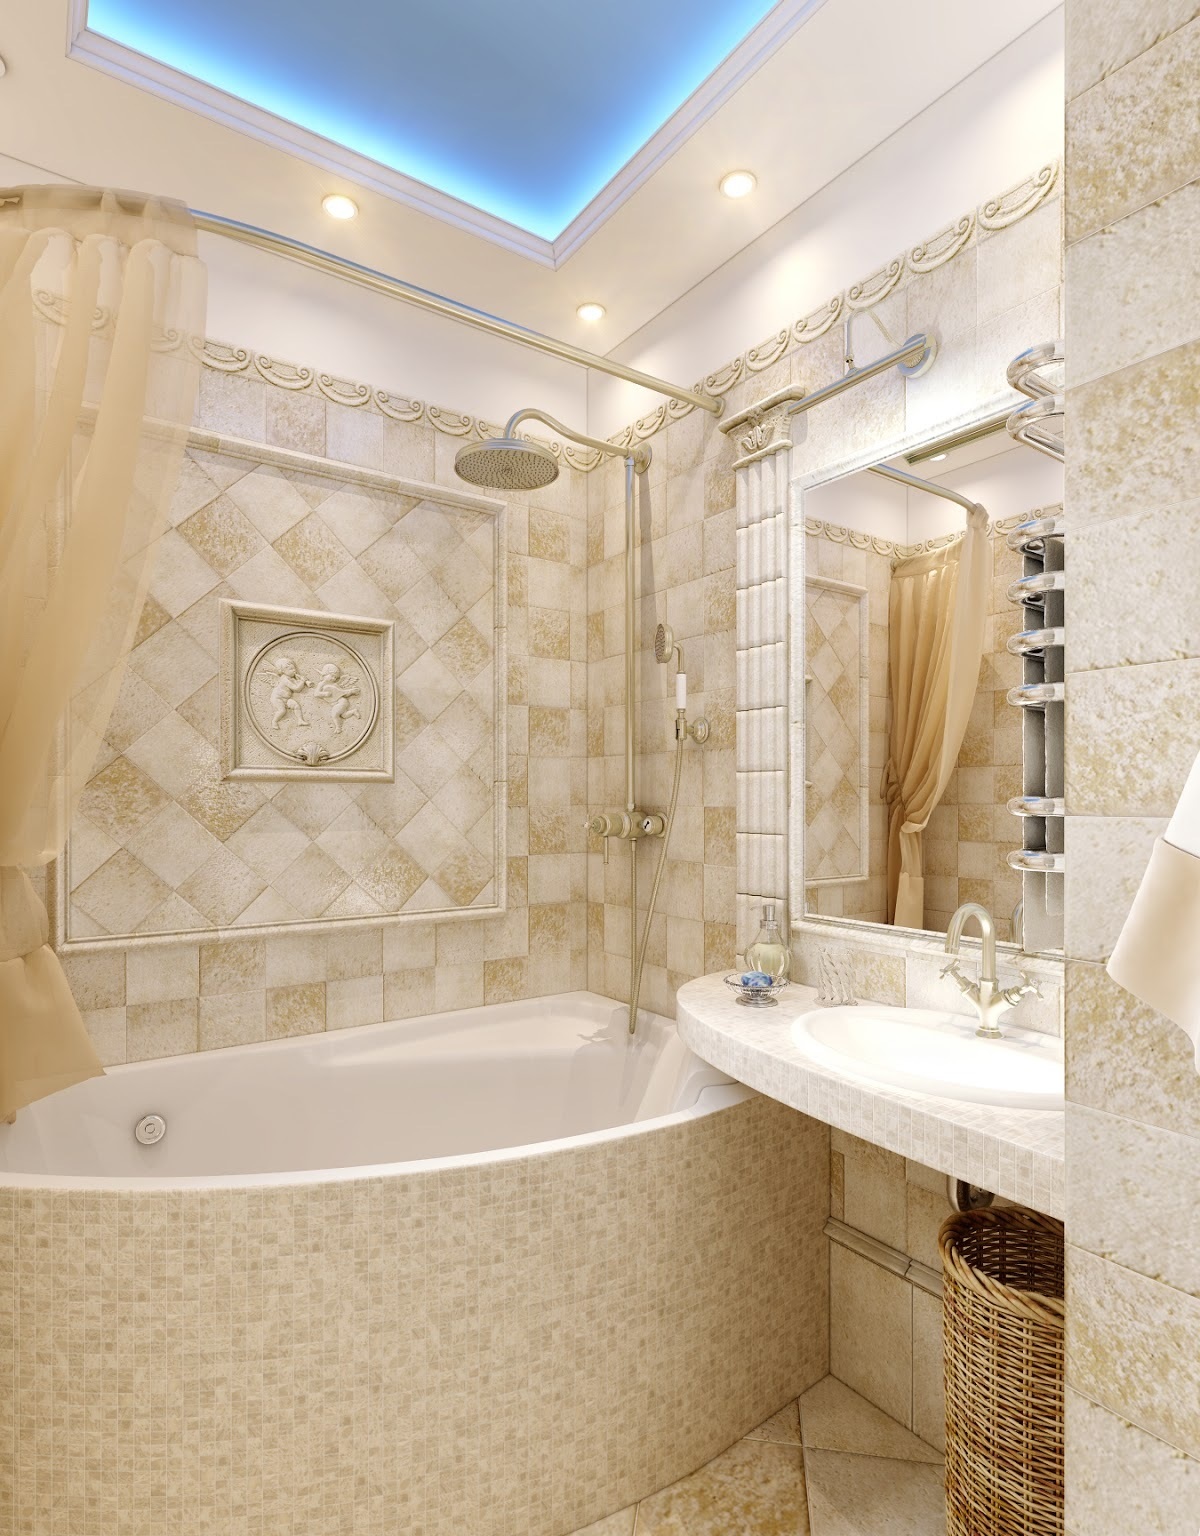 Un exemple d'un intérieur de salle de bain lumineux de couleur beige